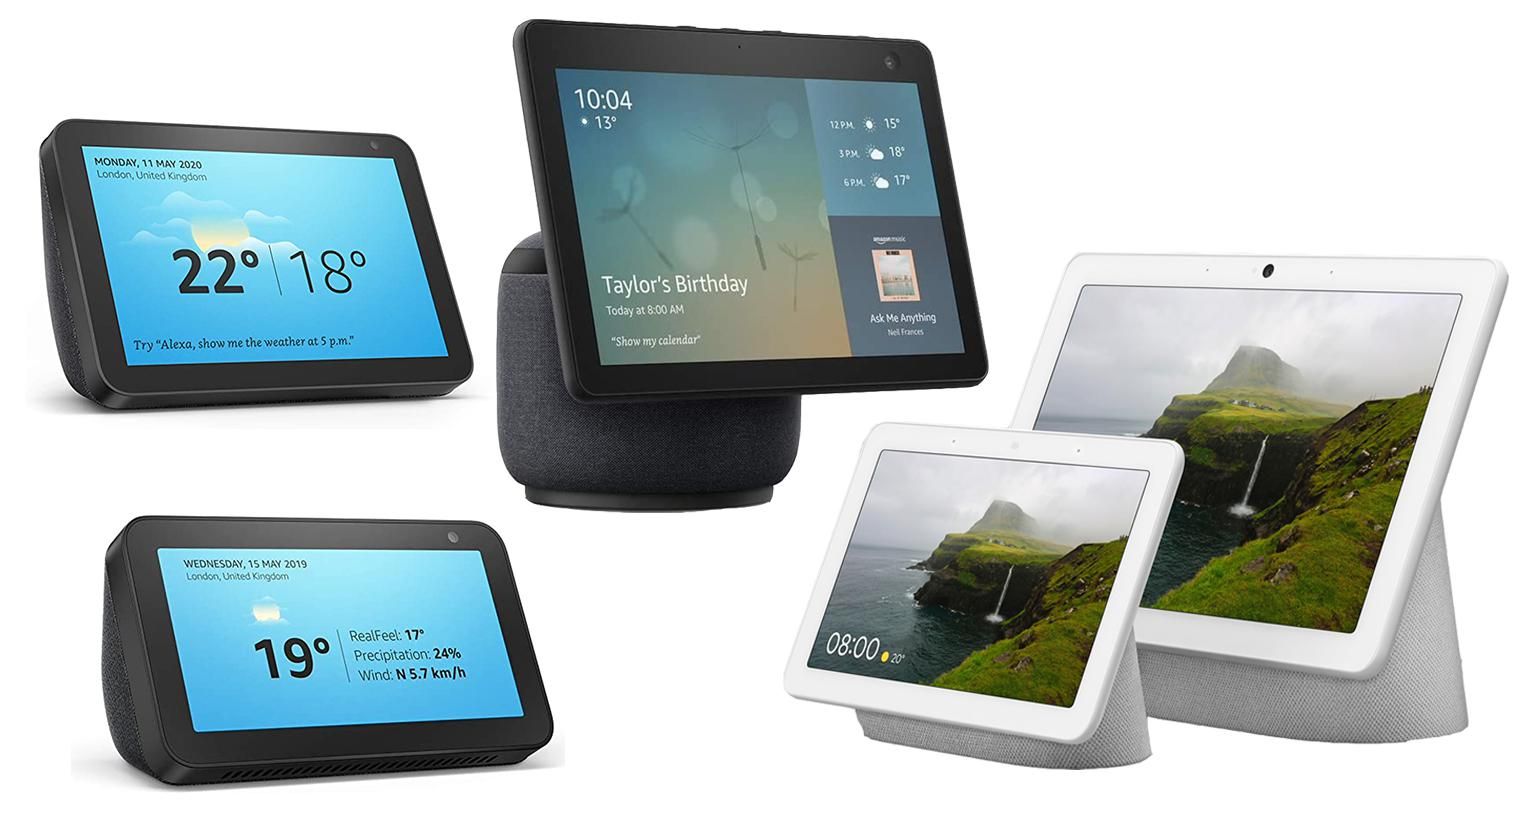 Amazon Echo Show and Nest Hub smart displays